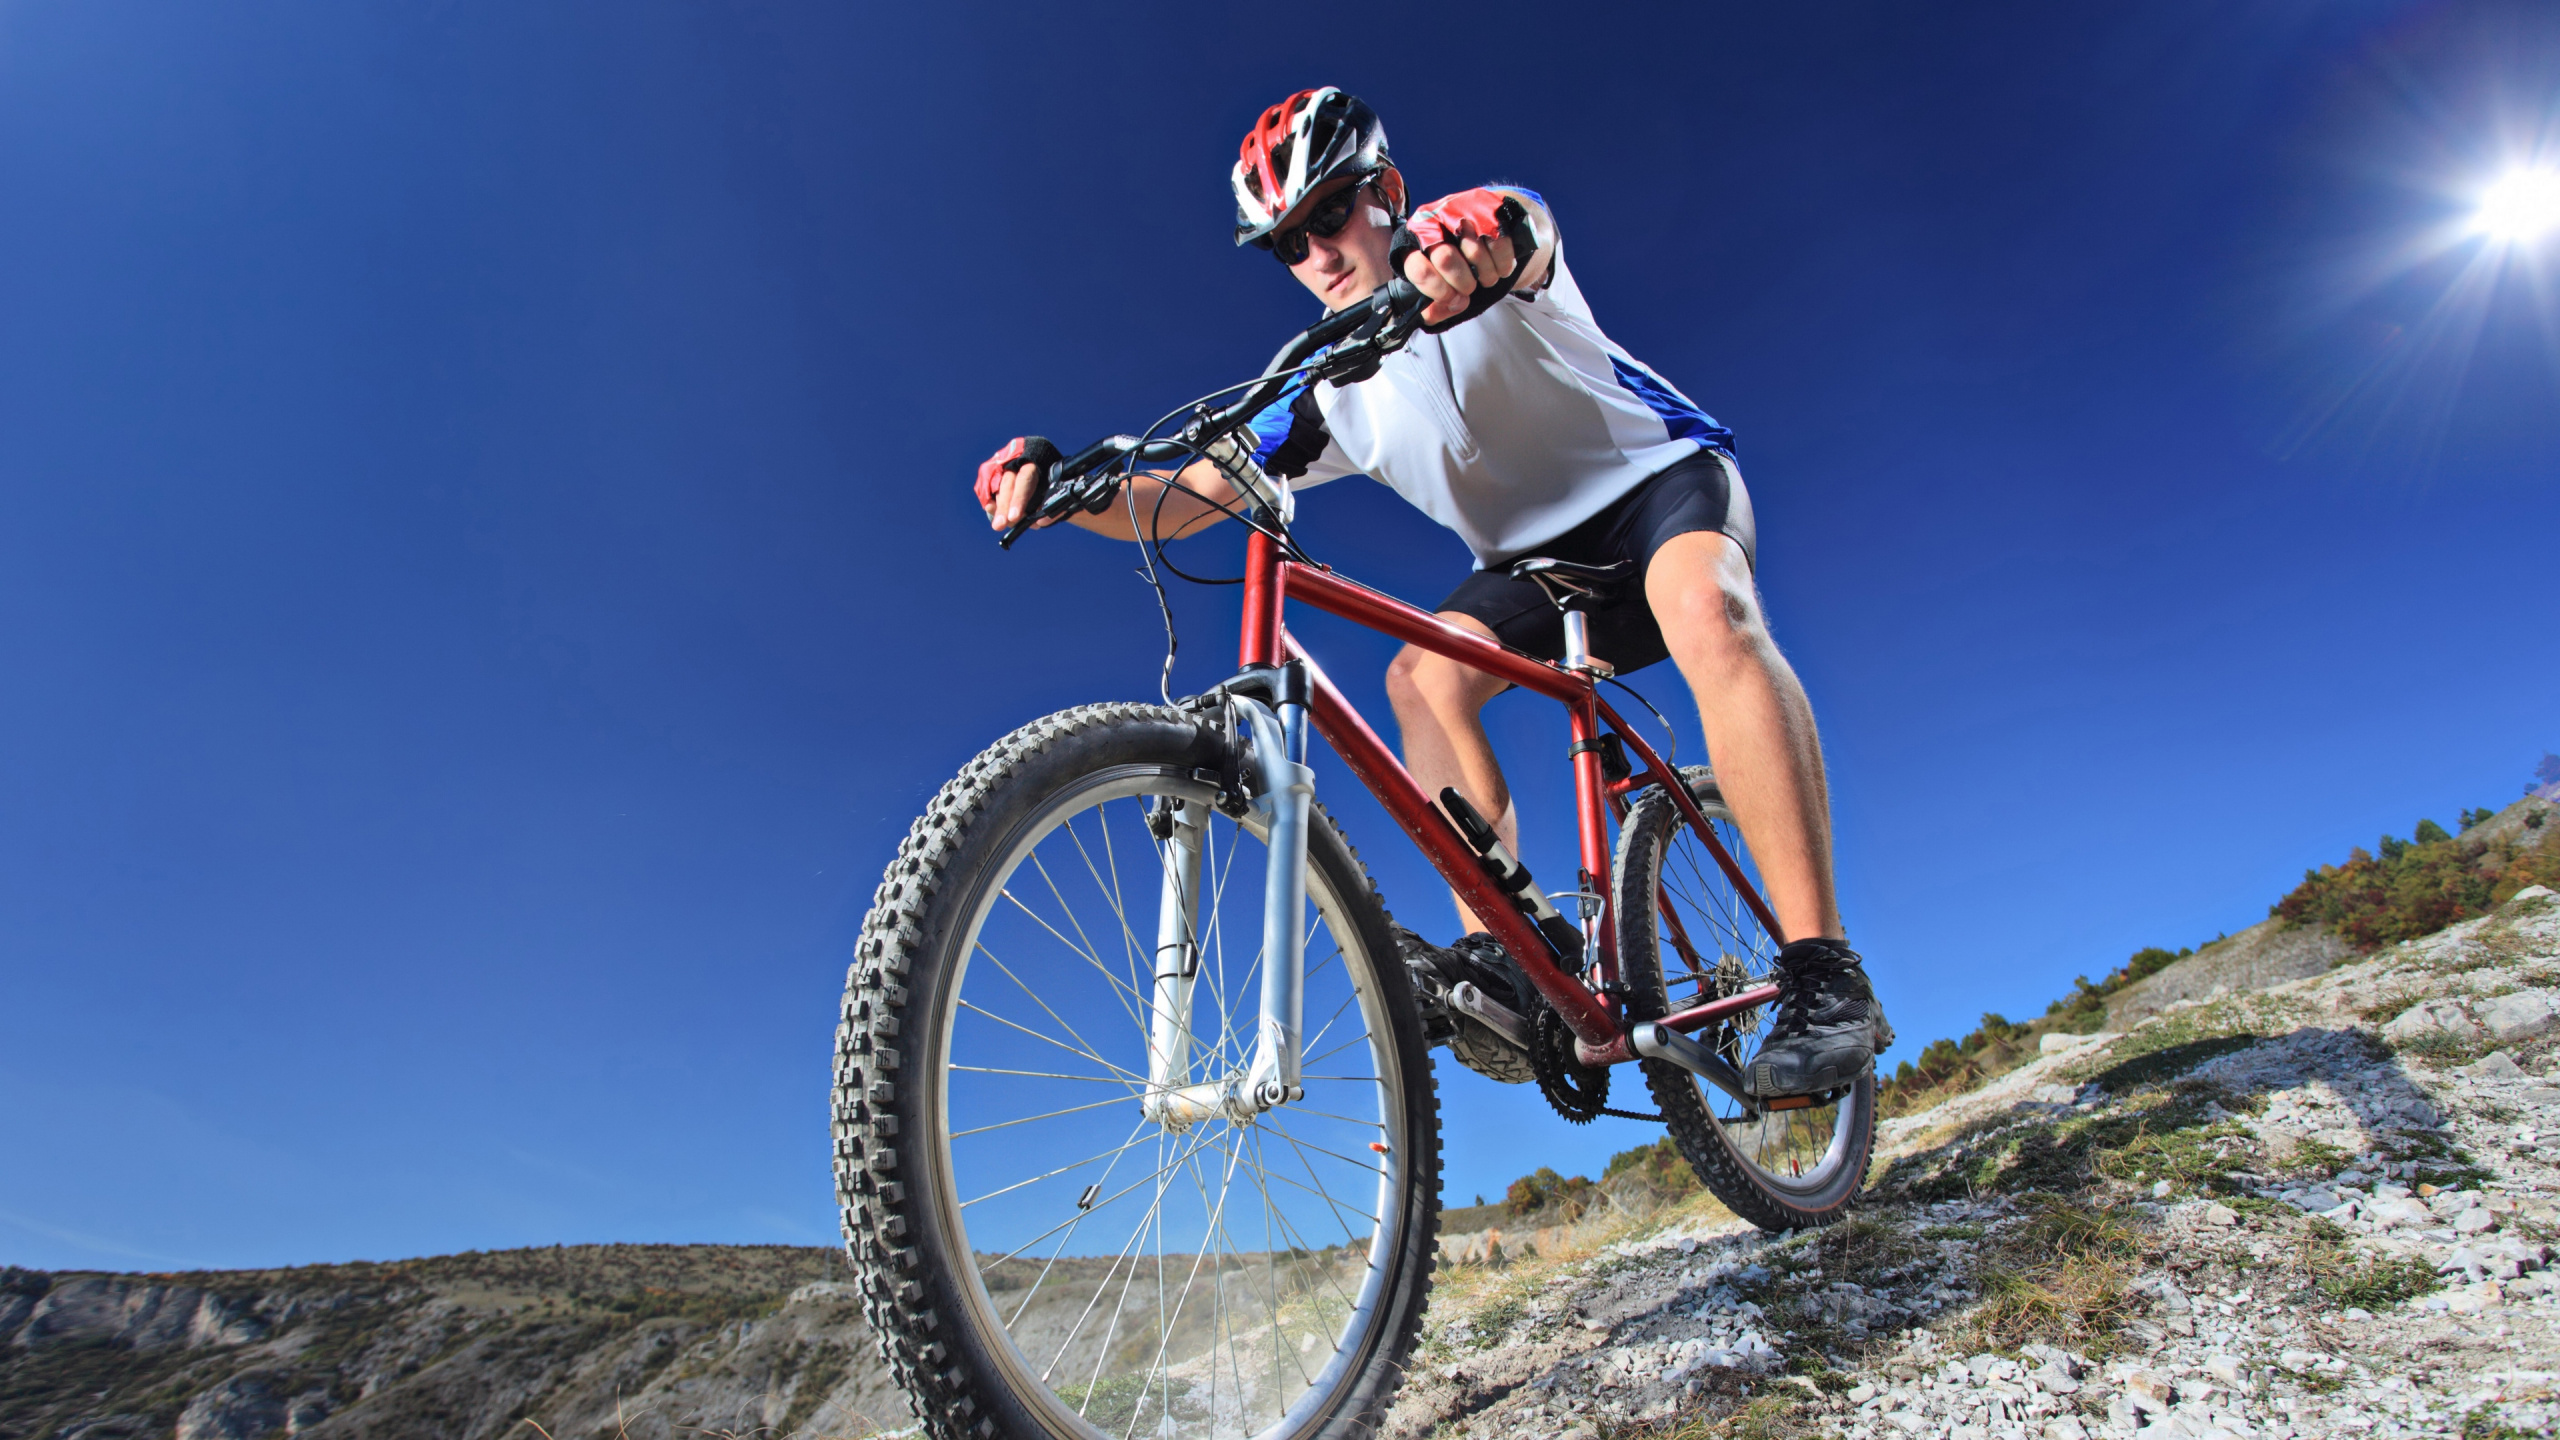 骑自行车, 循环的运动, 自行车, 山地自行车赛车, 车站的自行车 壁纸 2560x1440 允许